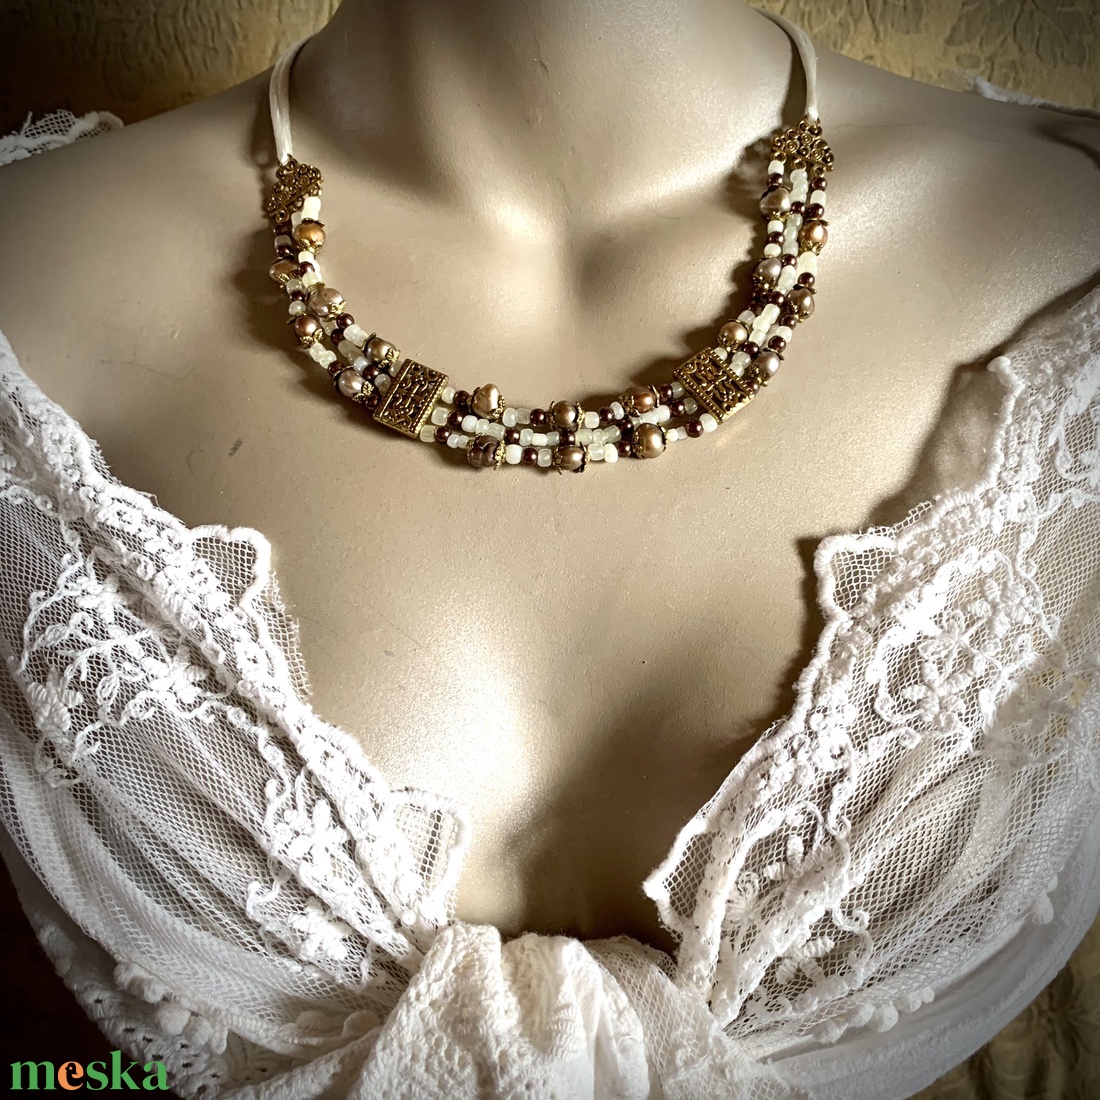 Bizánci stílusú 3 soros nyakék, ásványgyöngy nyaklánc, achat igazgyöngy üveggyöngy nyaklánc, külömleges ékszer, lánc - ékszer - ékszerszett - Meska.hu